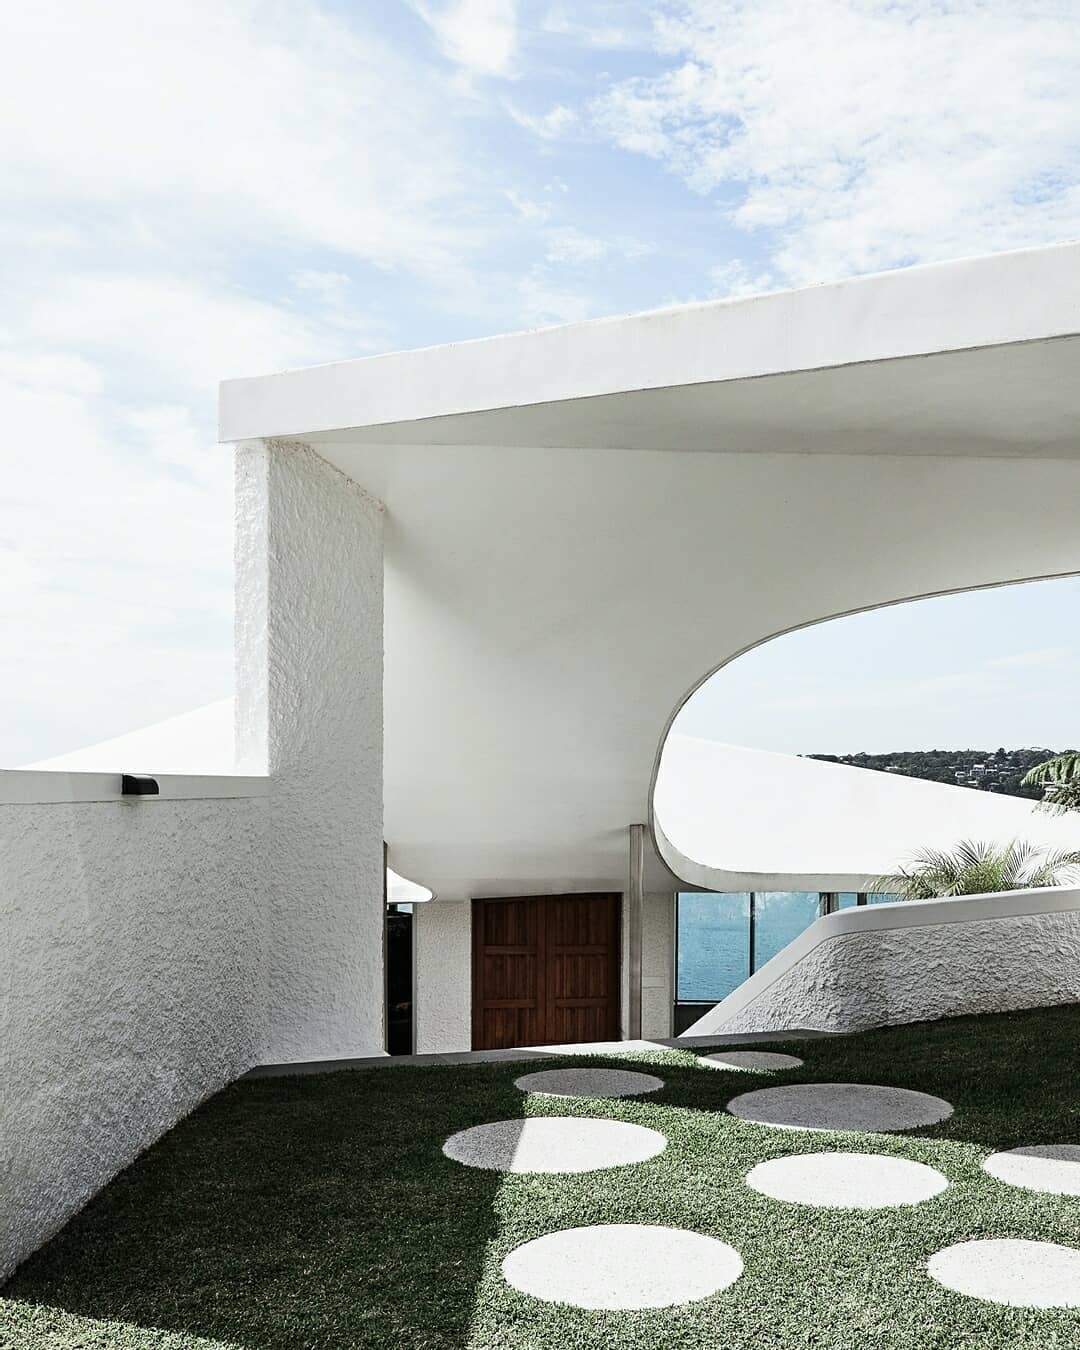 A Ruben Lane építész által 1969-ben tervezett és 1973-ban befejezett Cove House egy tengerparti ház, amelynek kertje kiemeli az íveket és felerősíti a hatást